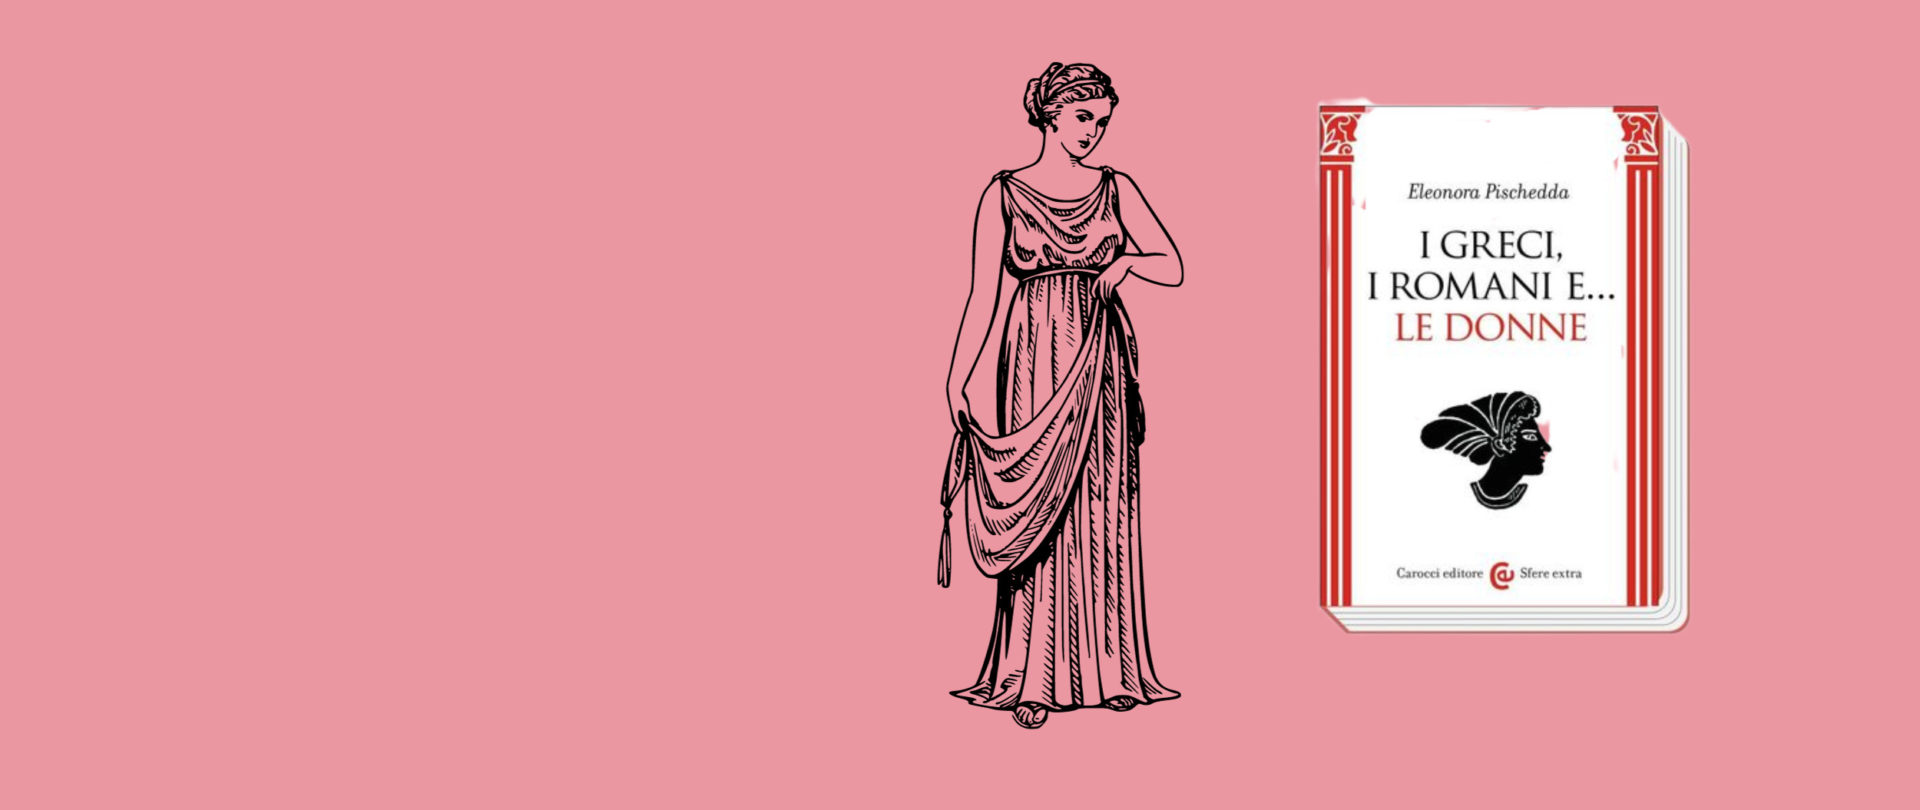 Presentazione del libro I greci, i romani e… le donne di Eleonora Pischedda